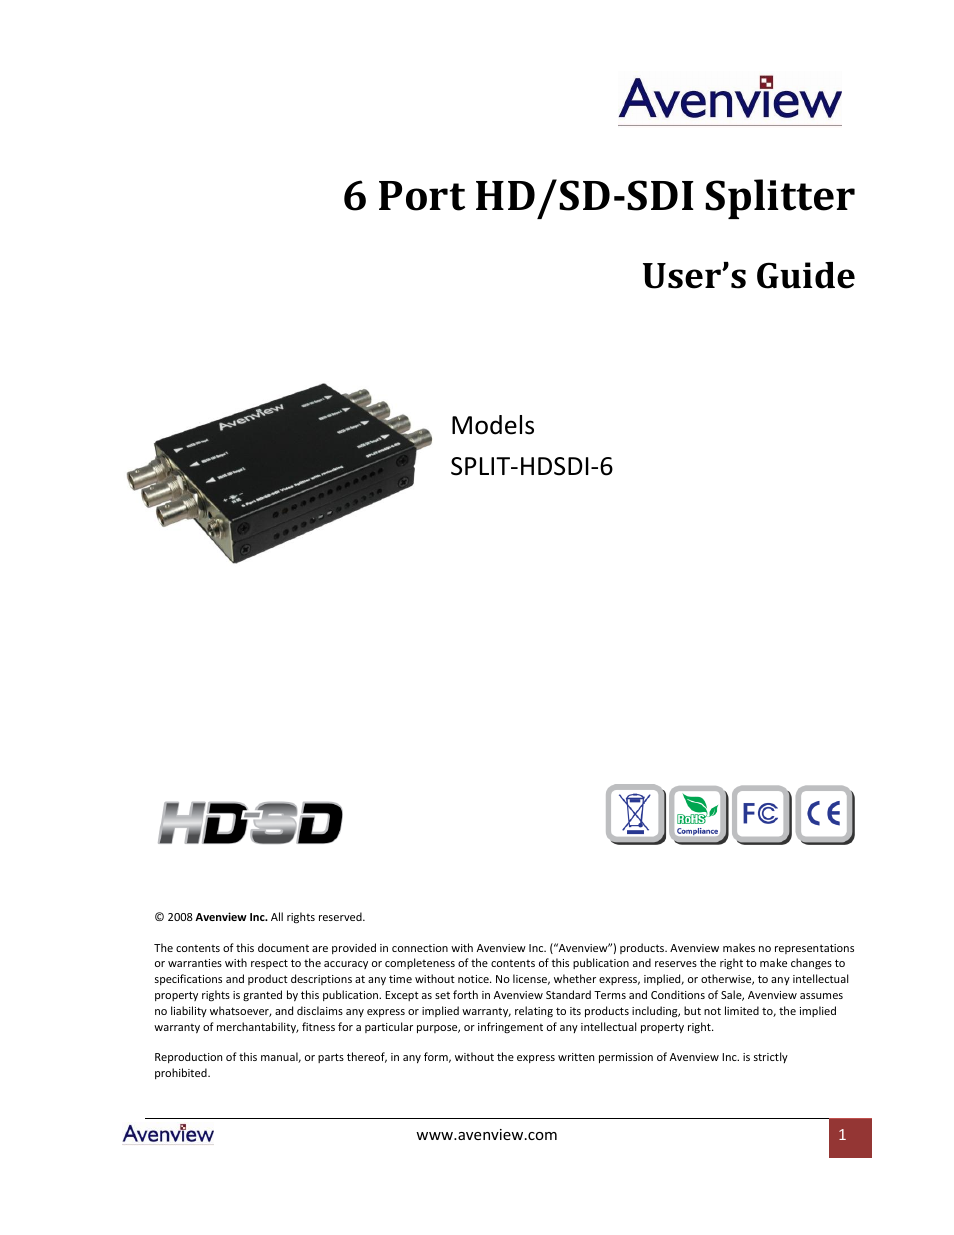 SPLIT-HDSDI-6